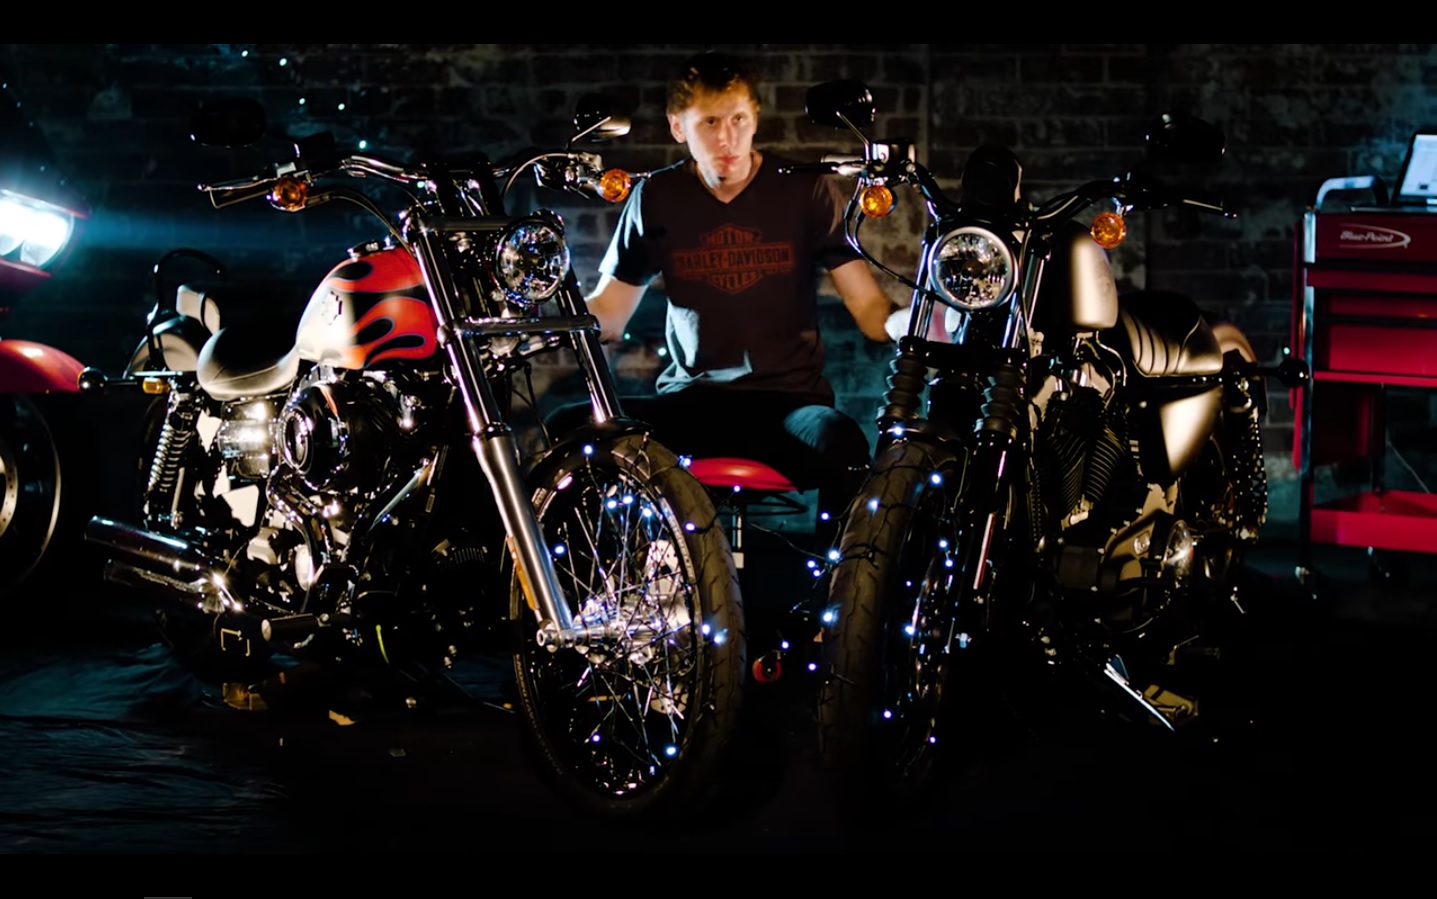 Giáng Sinh ngọt ngào từ Harley Davidson